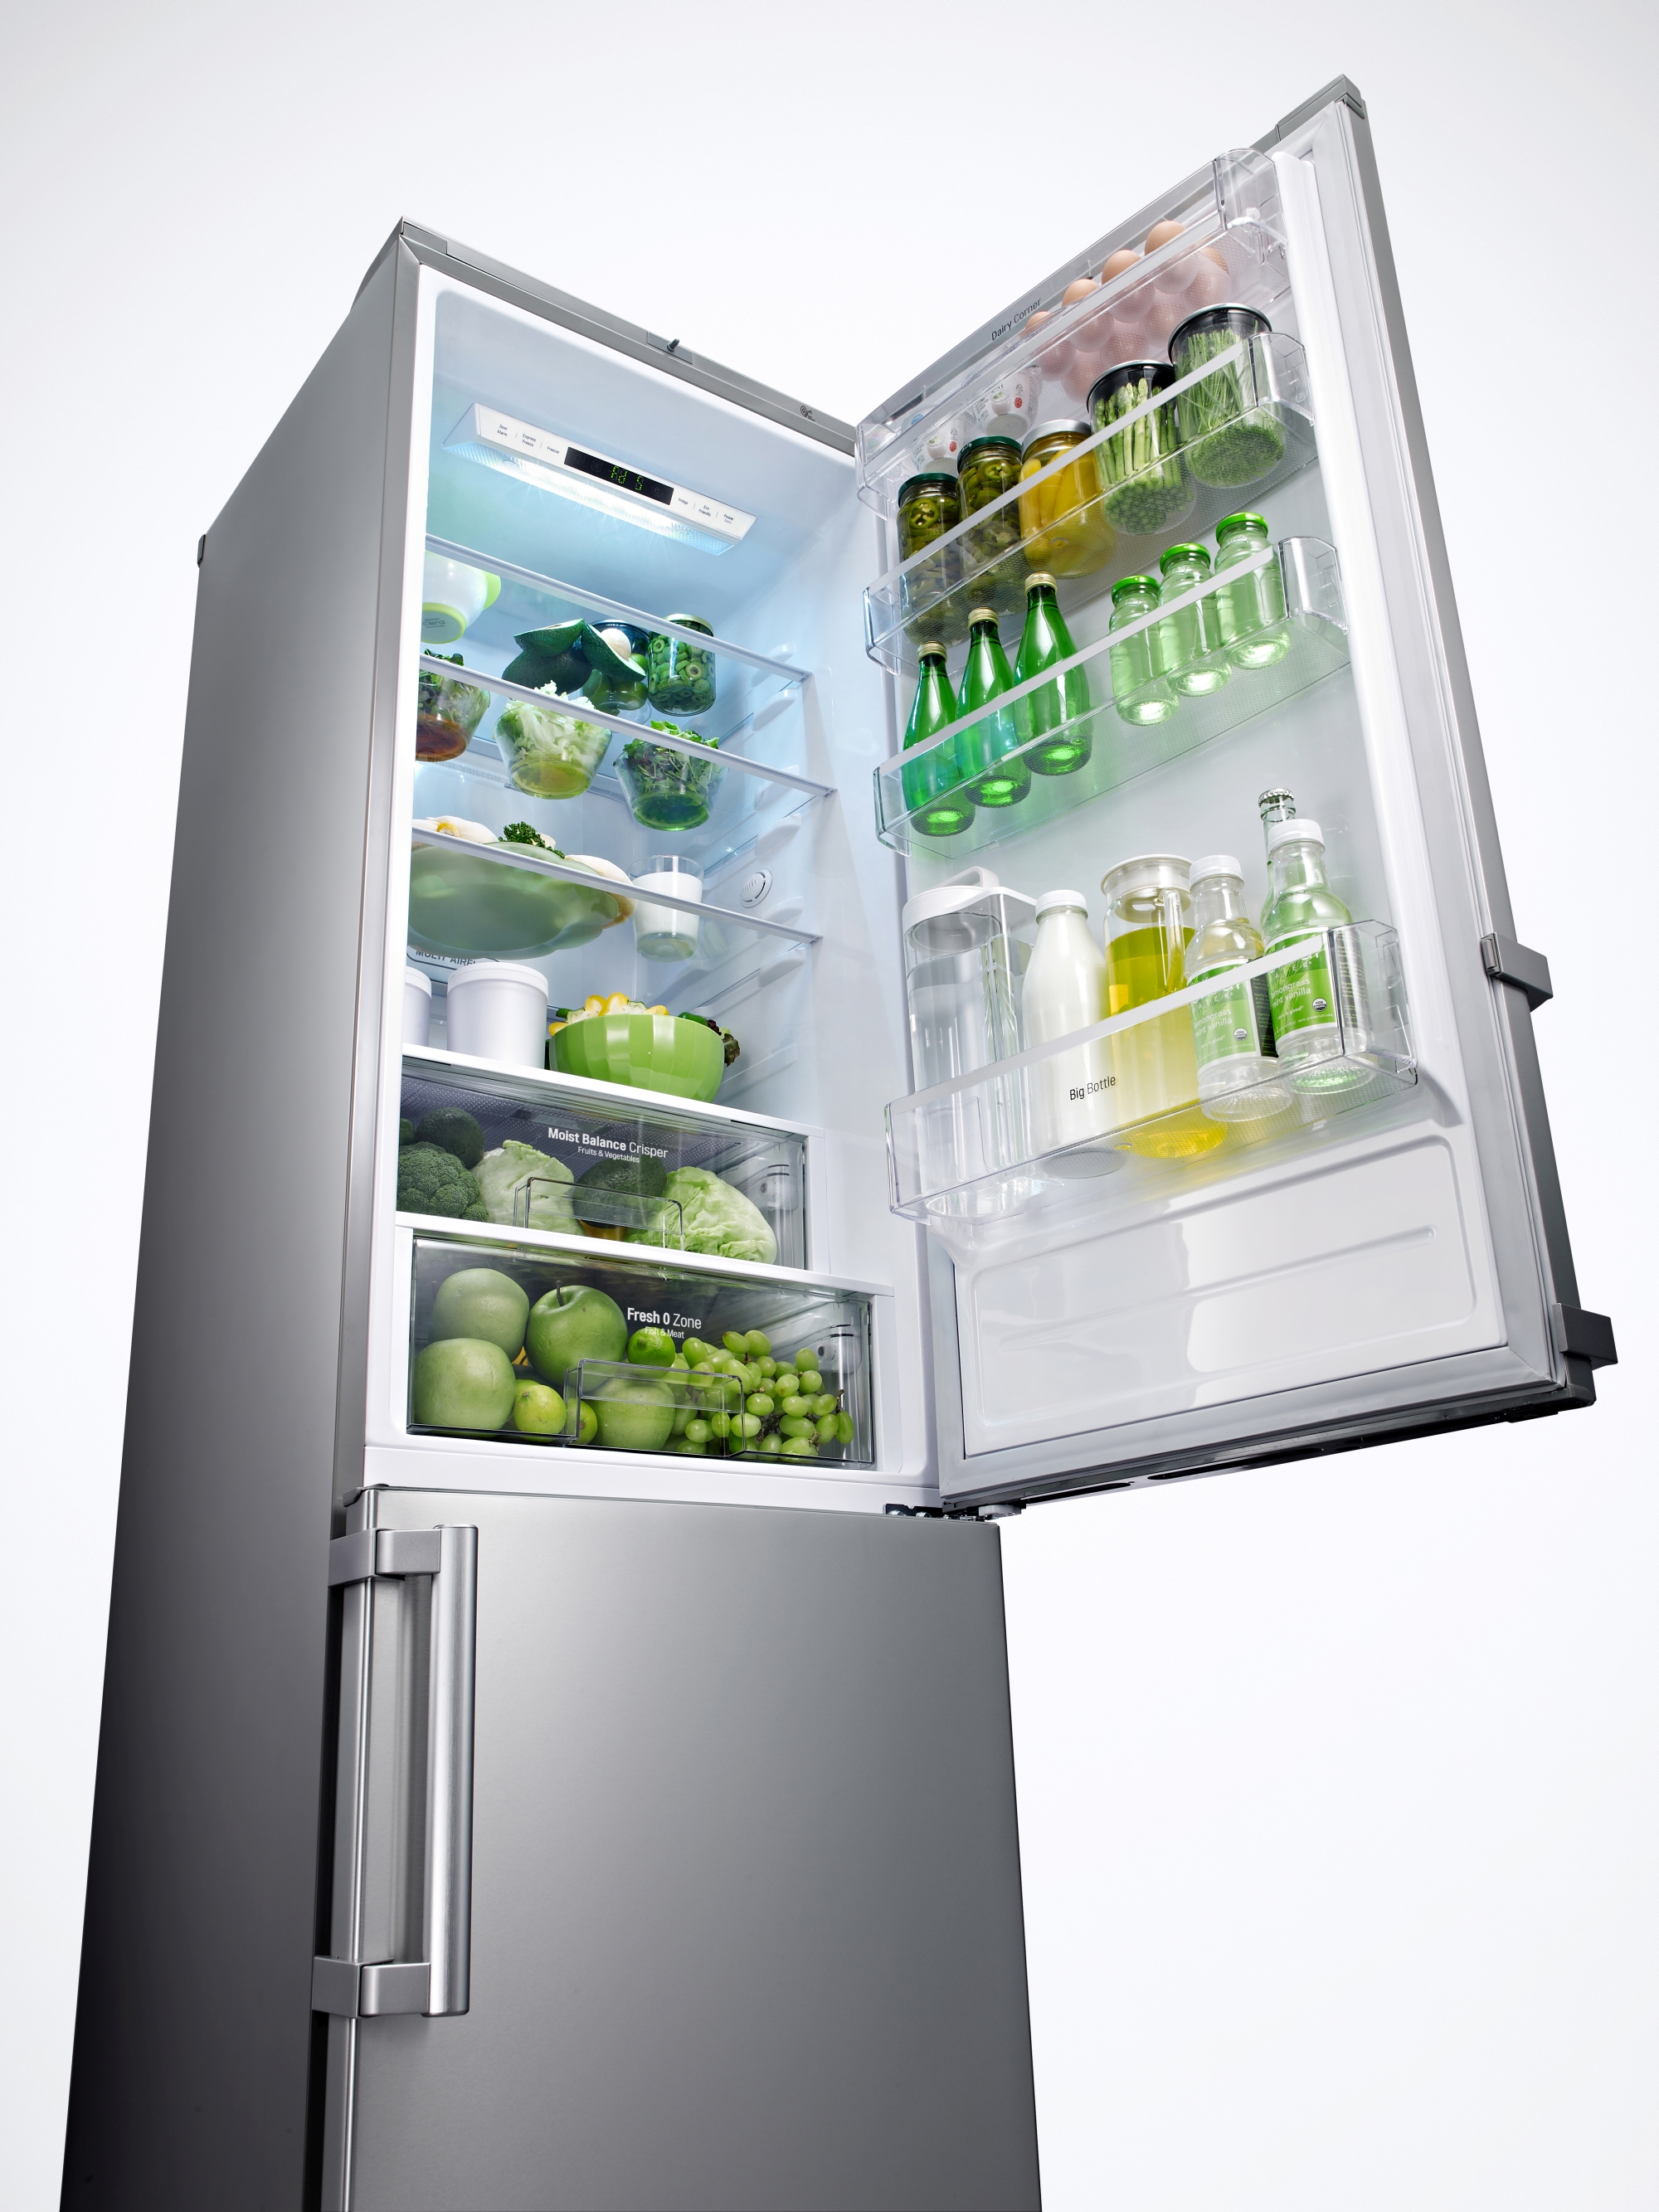 двухкамерный холодильник с 4 полками в морозильной камере